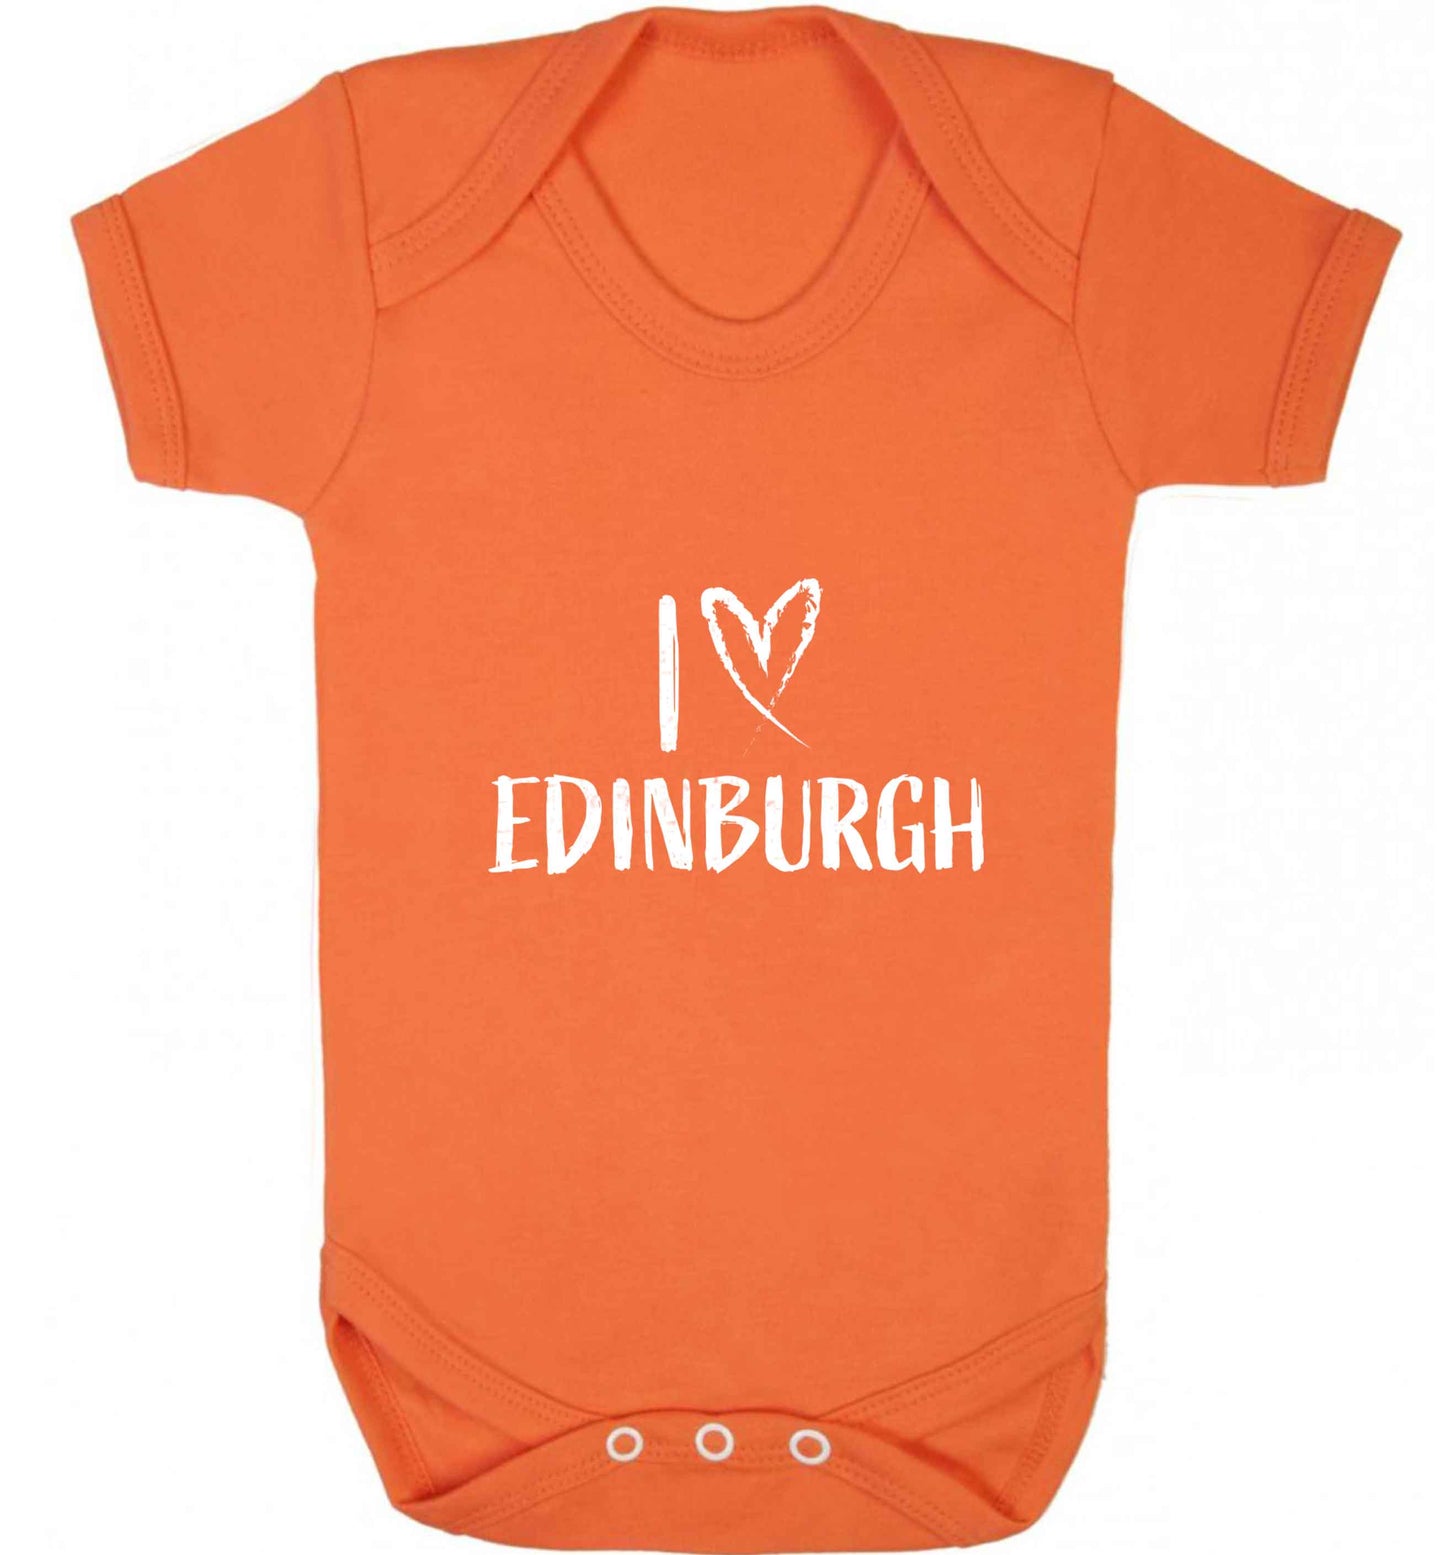 I love Edinburgh baby vest orange 18-24 months